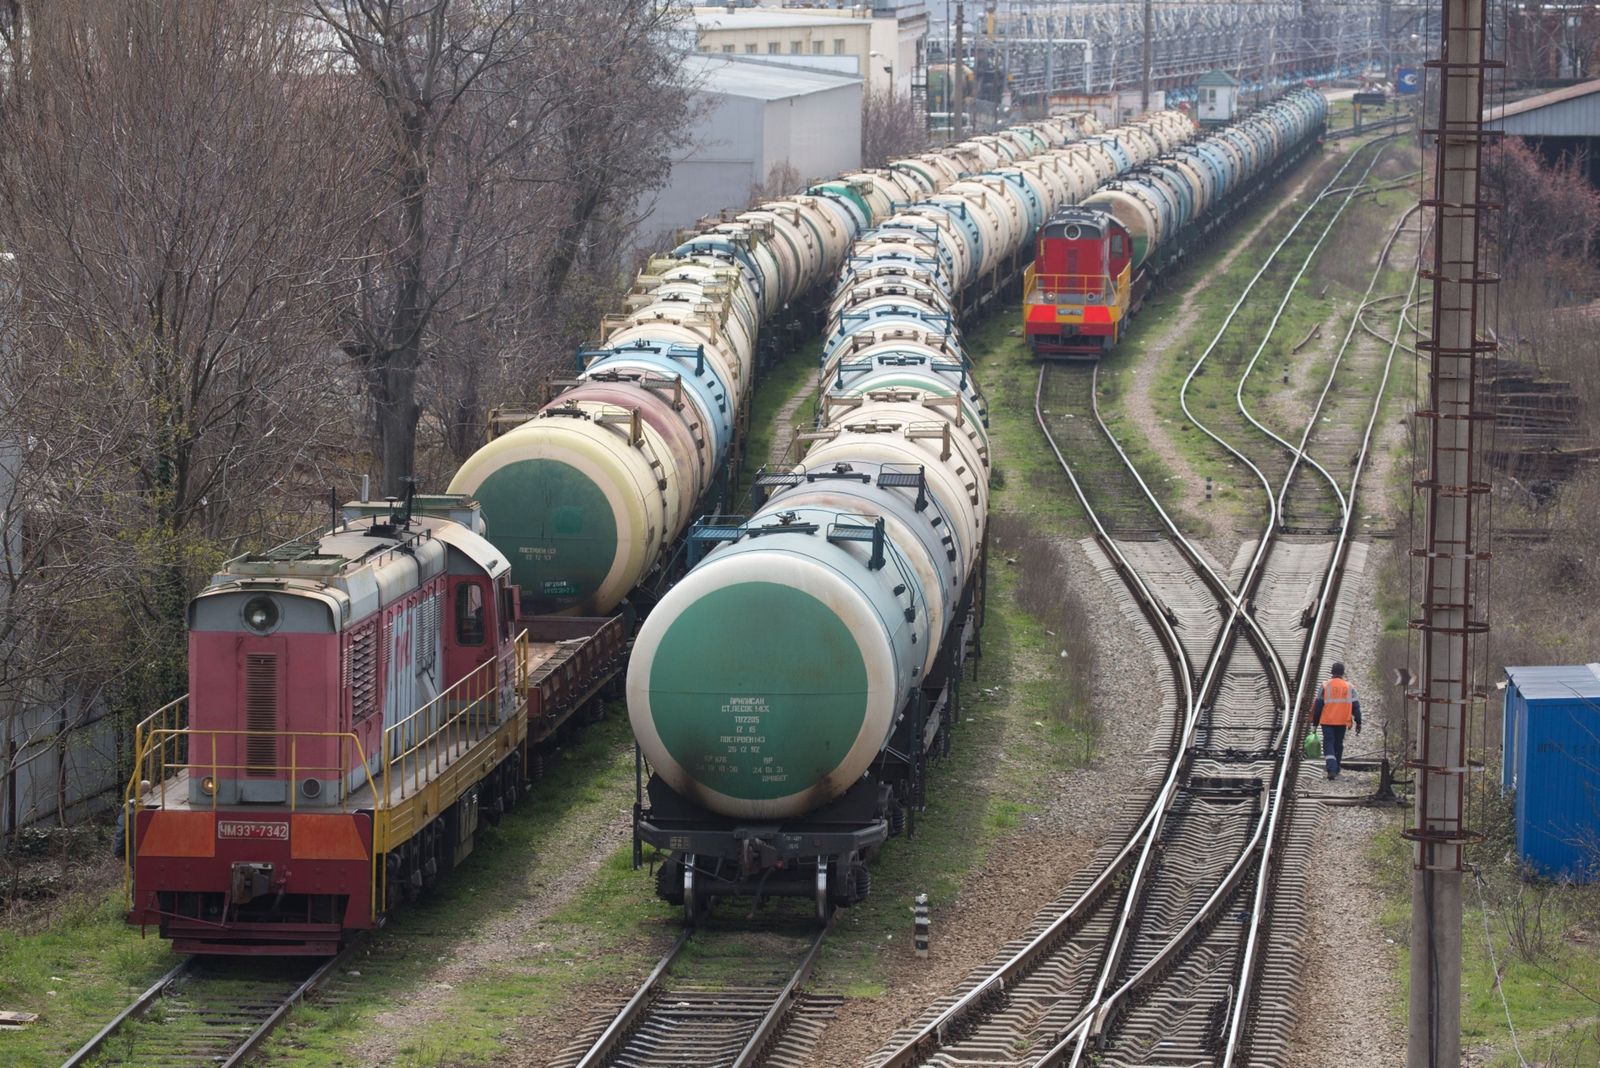 صادرات النفط الروسية تضطر للإبحار في رحلات أطول لإيجاد مشترين